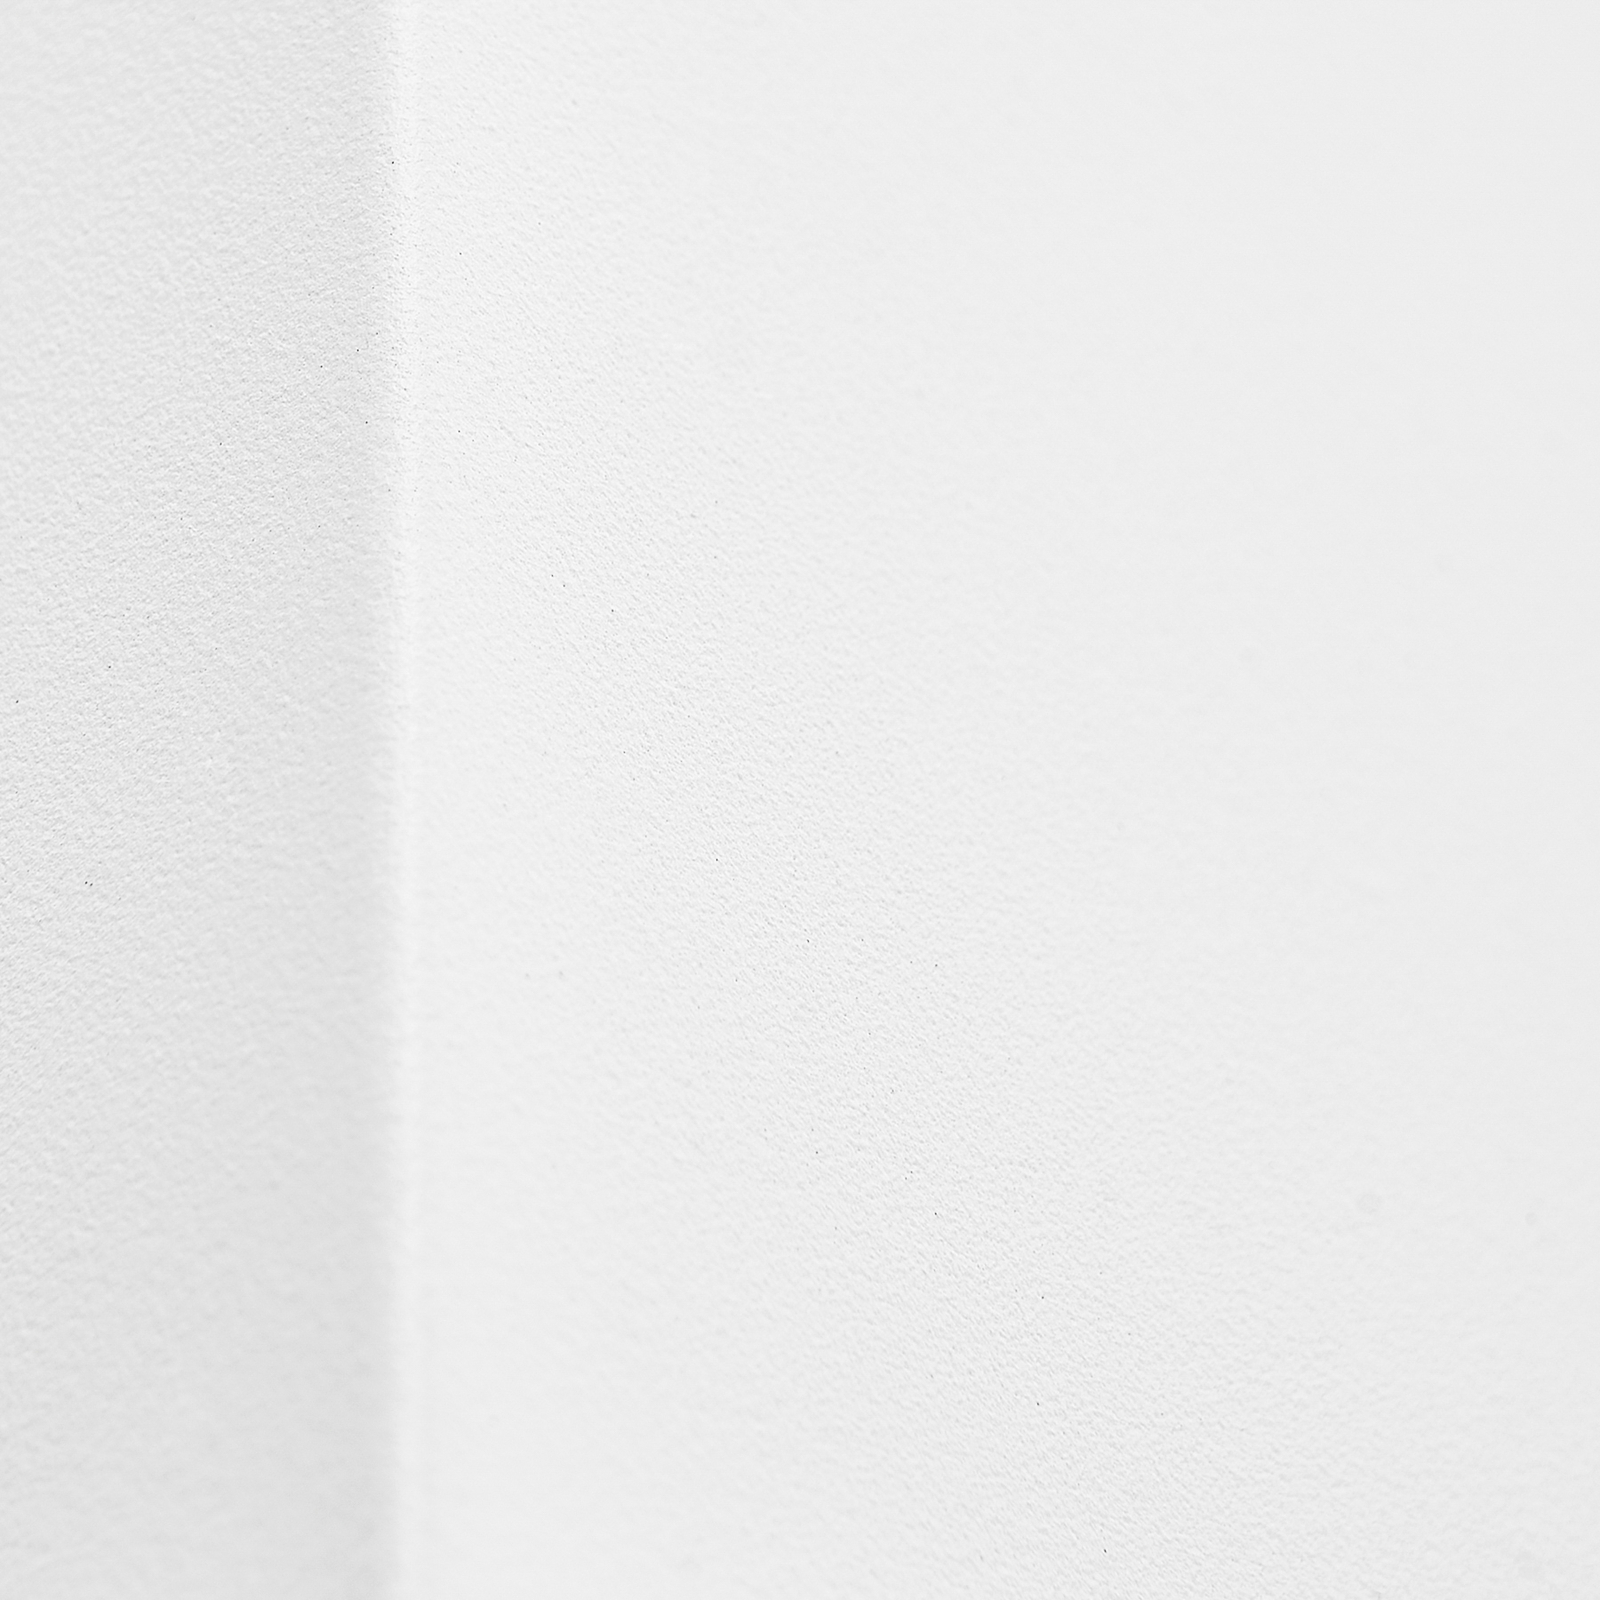 Prios ulkoseinävalaisin Tetje, valkoinen, kulmikas, 10 cm, 4 kpl, sarja